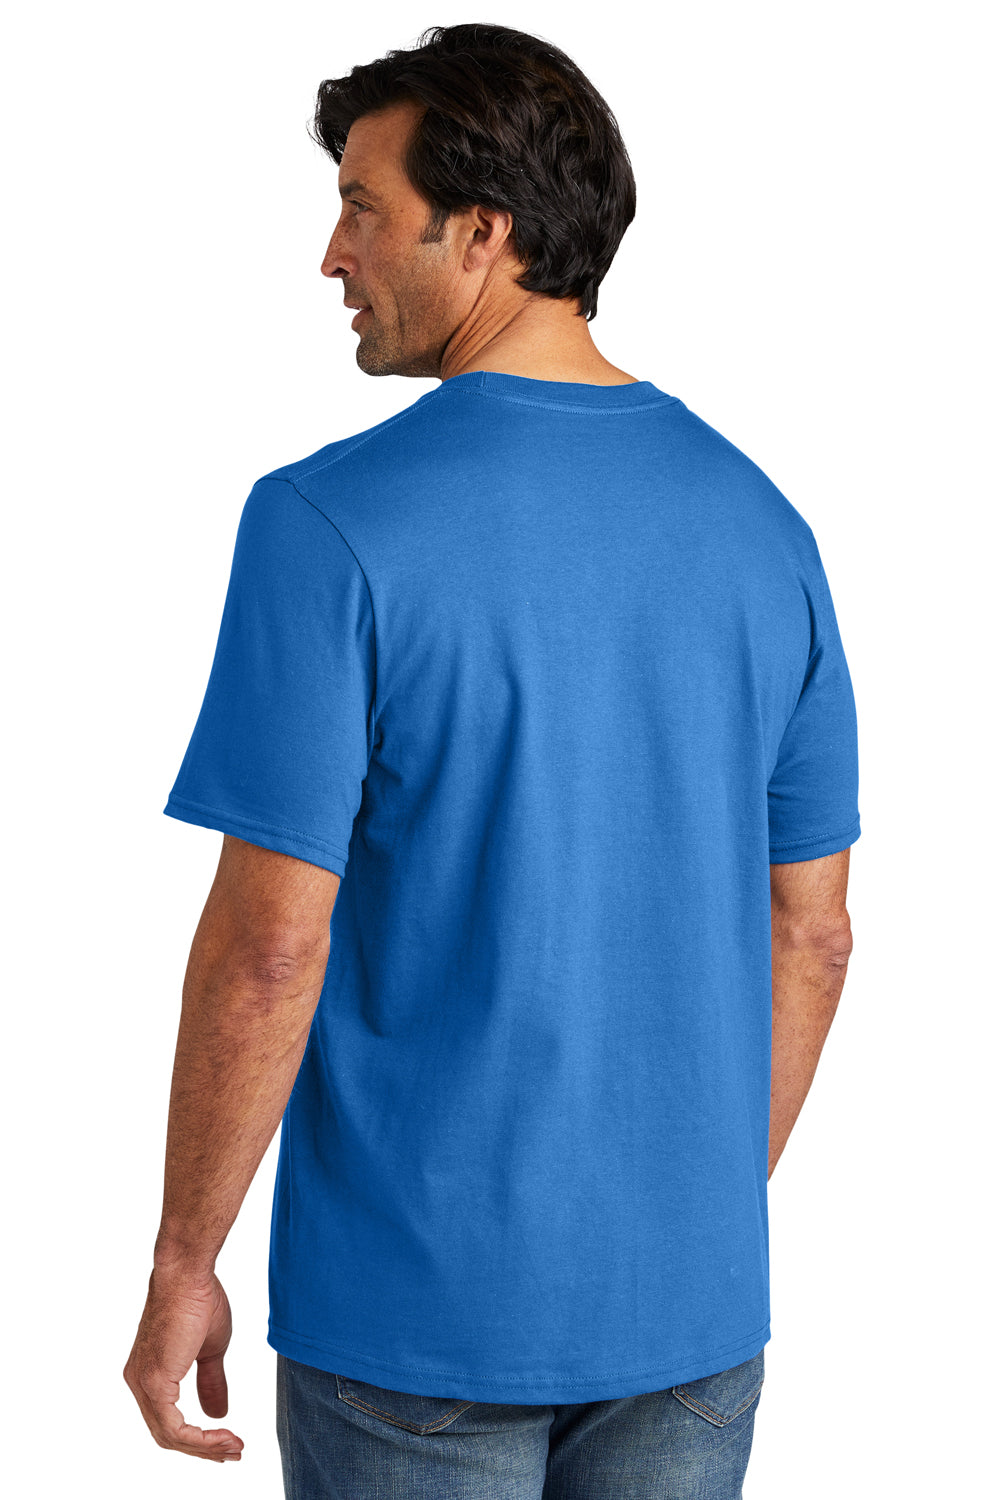 Volunteer Knitwear VL60 Chore Short Sleeve Crewneck T-Shirt True Royal Blue Back